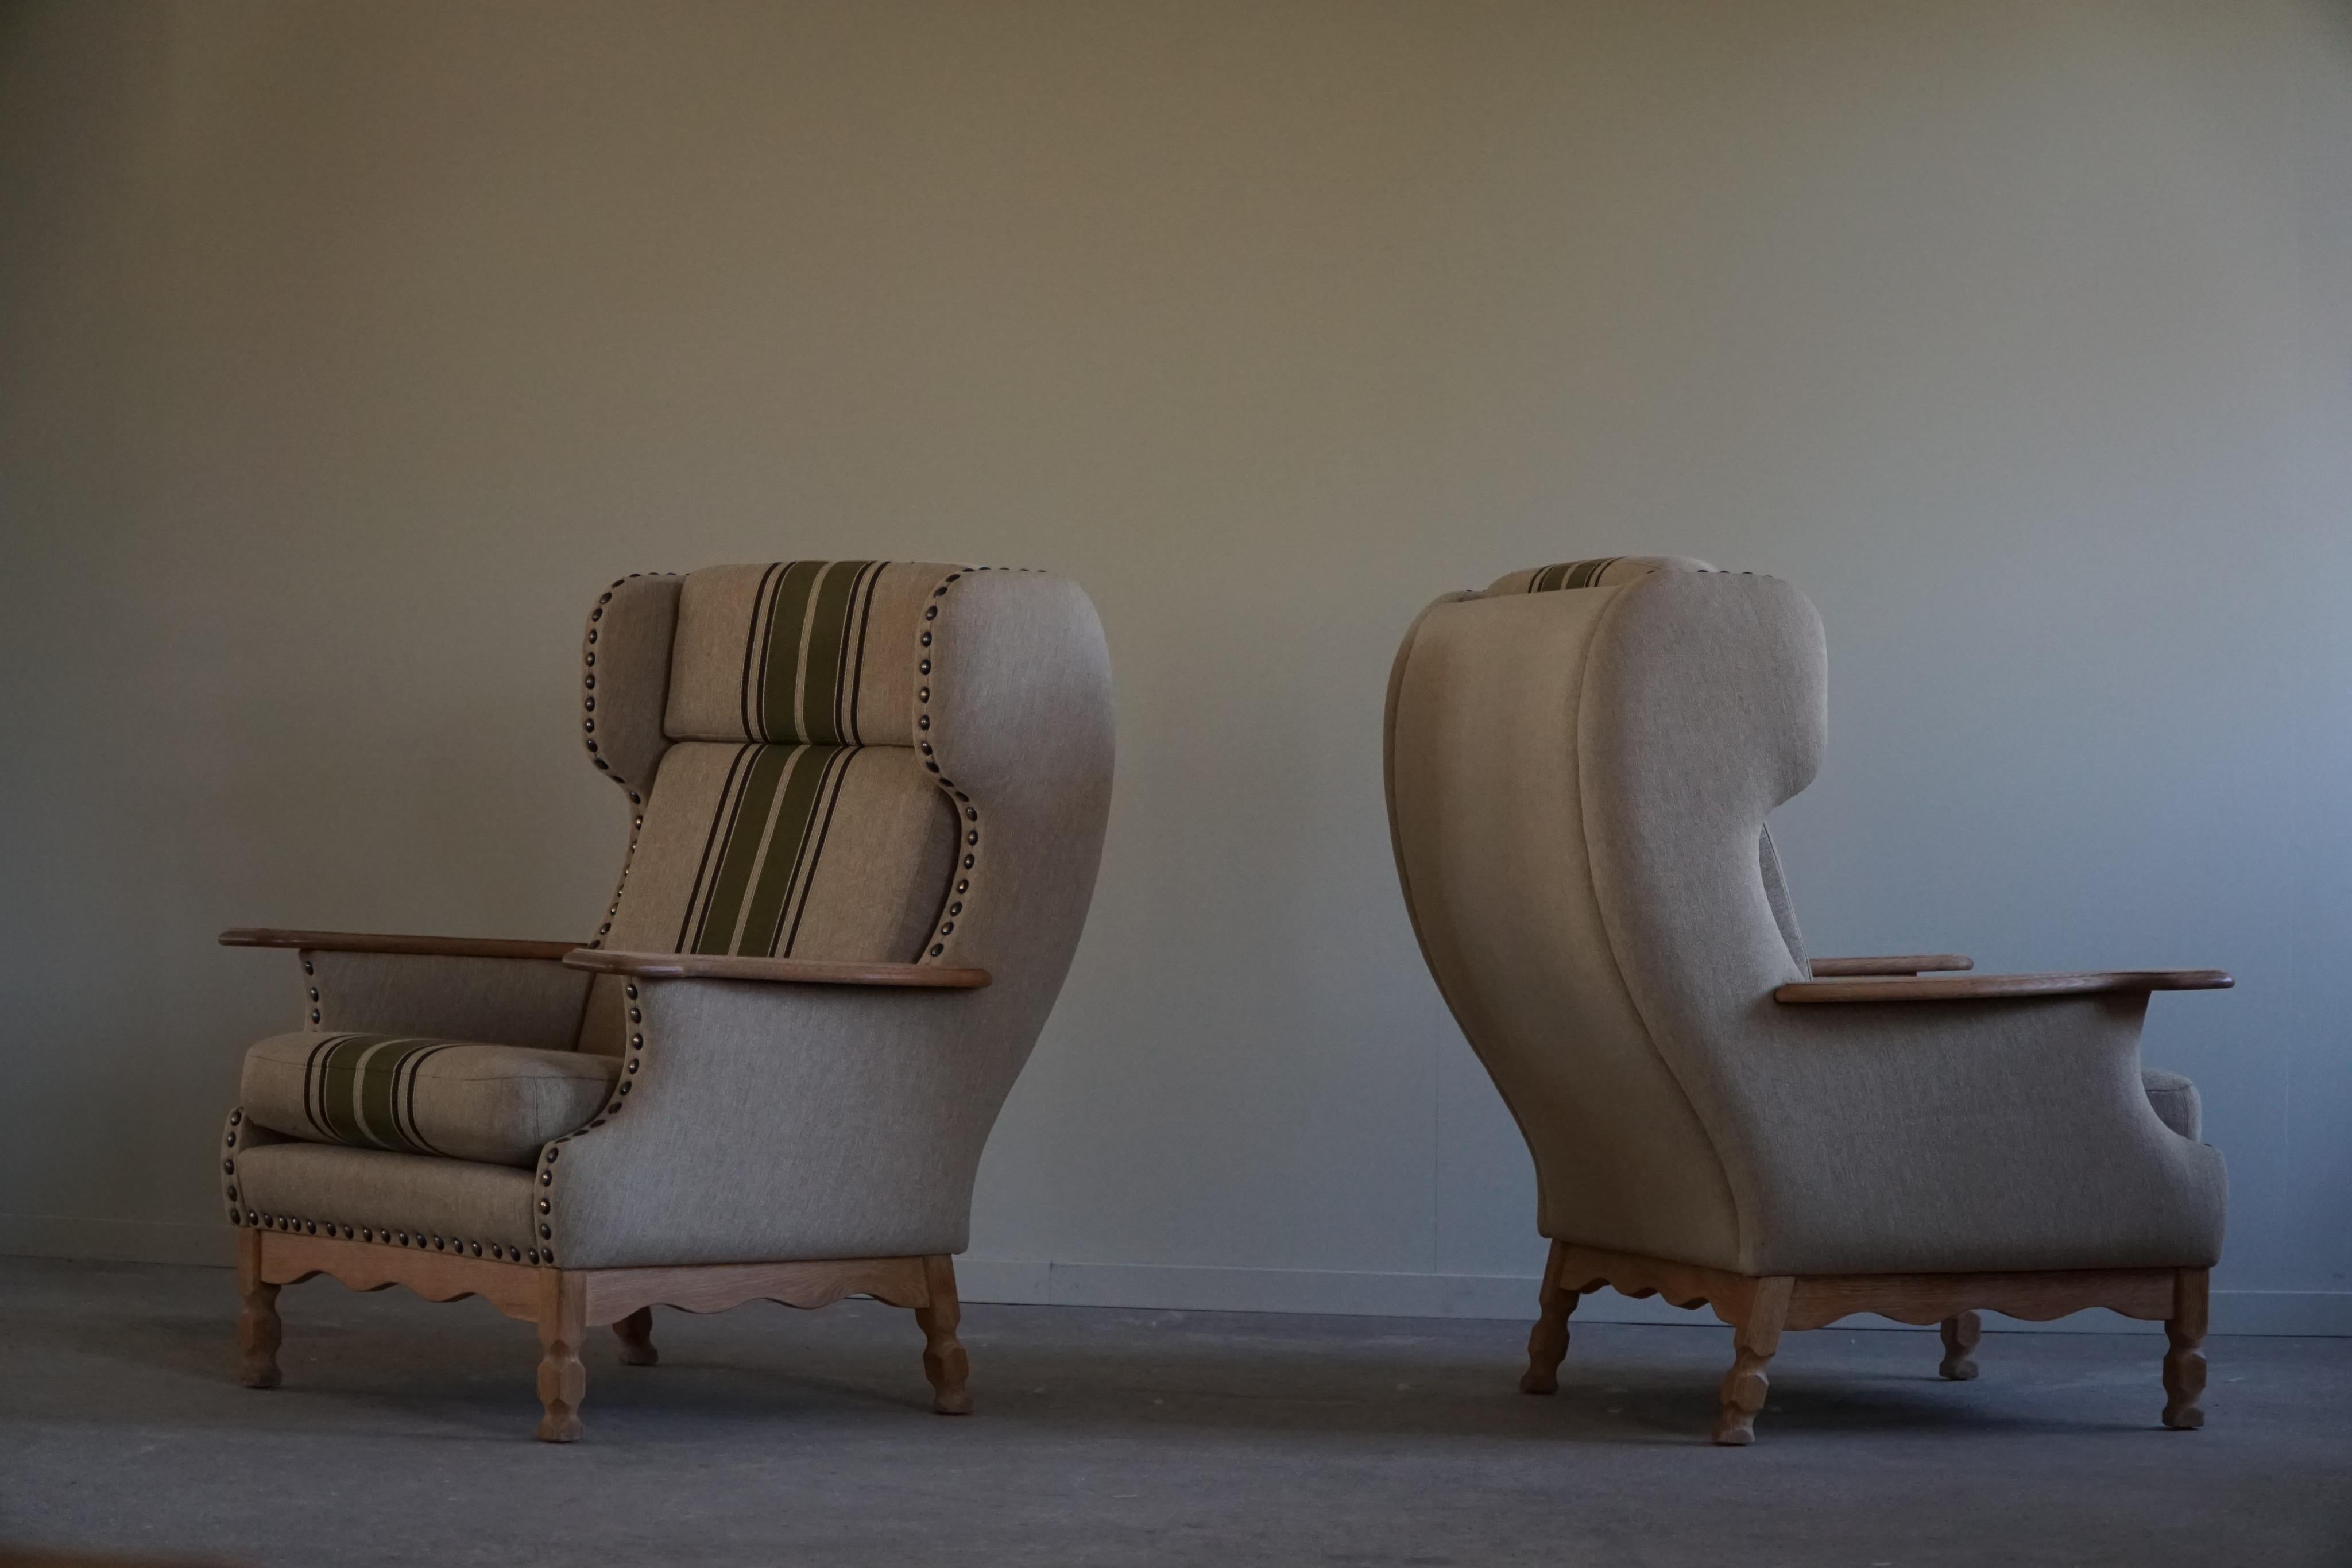 Ein skulpturales Paar komfortabler Lounge-Sessel mit hoher Rückenlehne, die aus hochwertigen Materialien gefertigt sind und in ihrem Stil an die Arbeiten des dänischen Designers Henning Kjærnulf erinnern. Die Armlehne ist aus dem gleichen Eichenholz